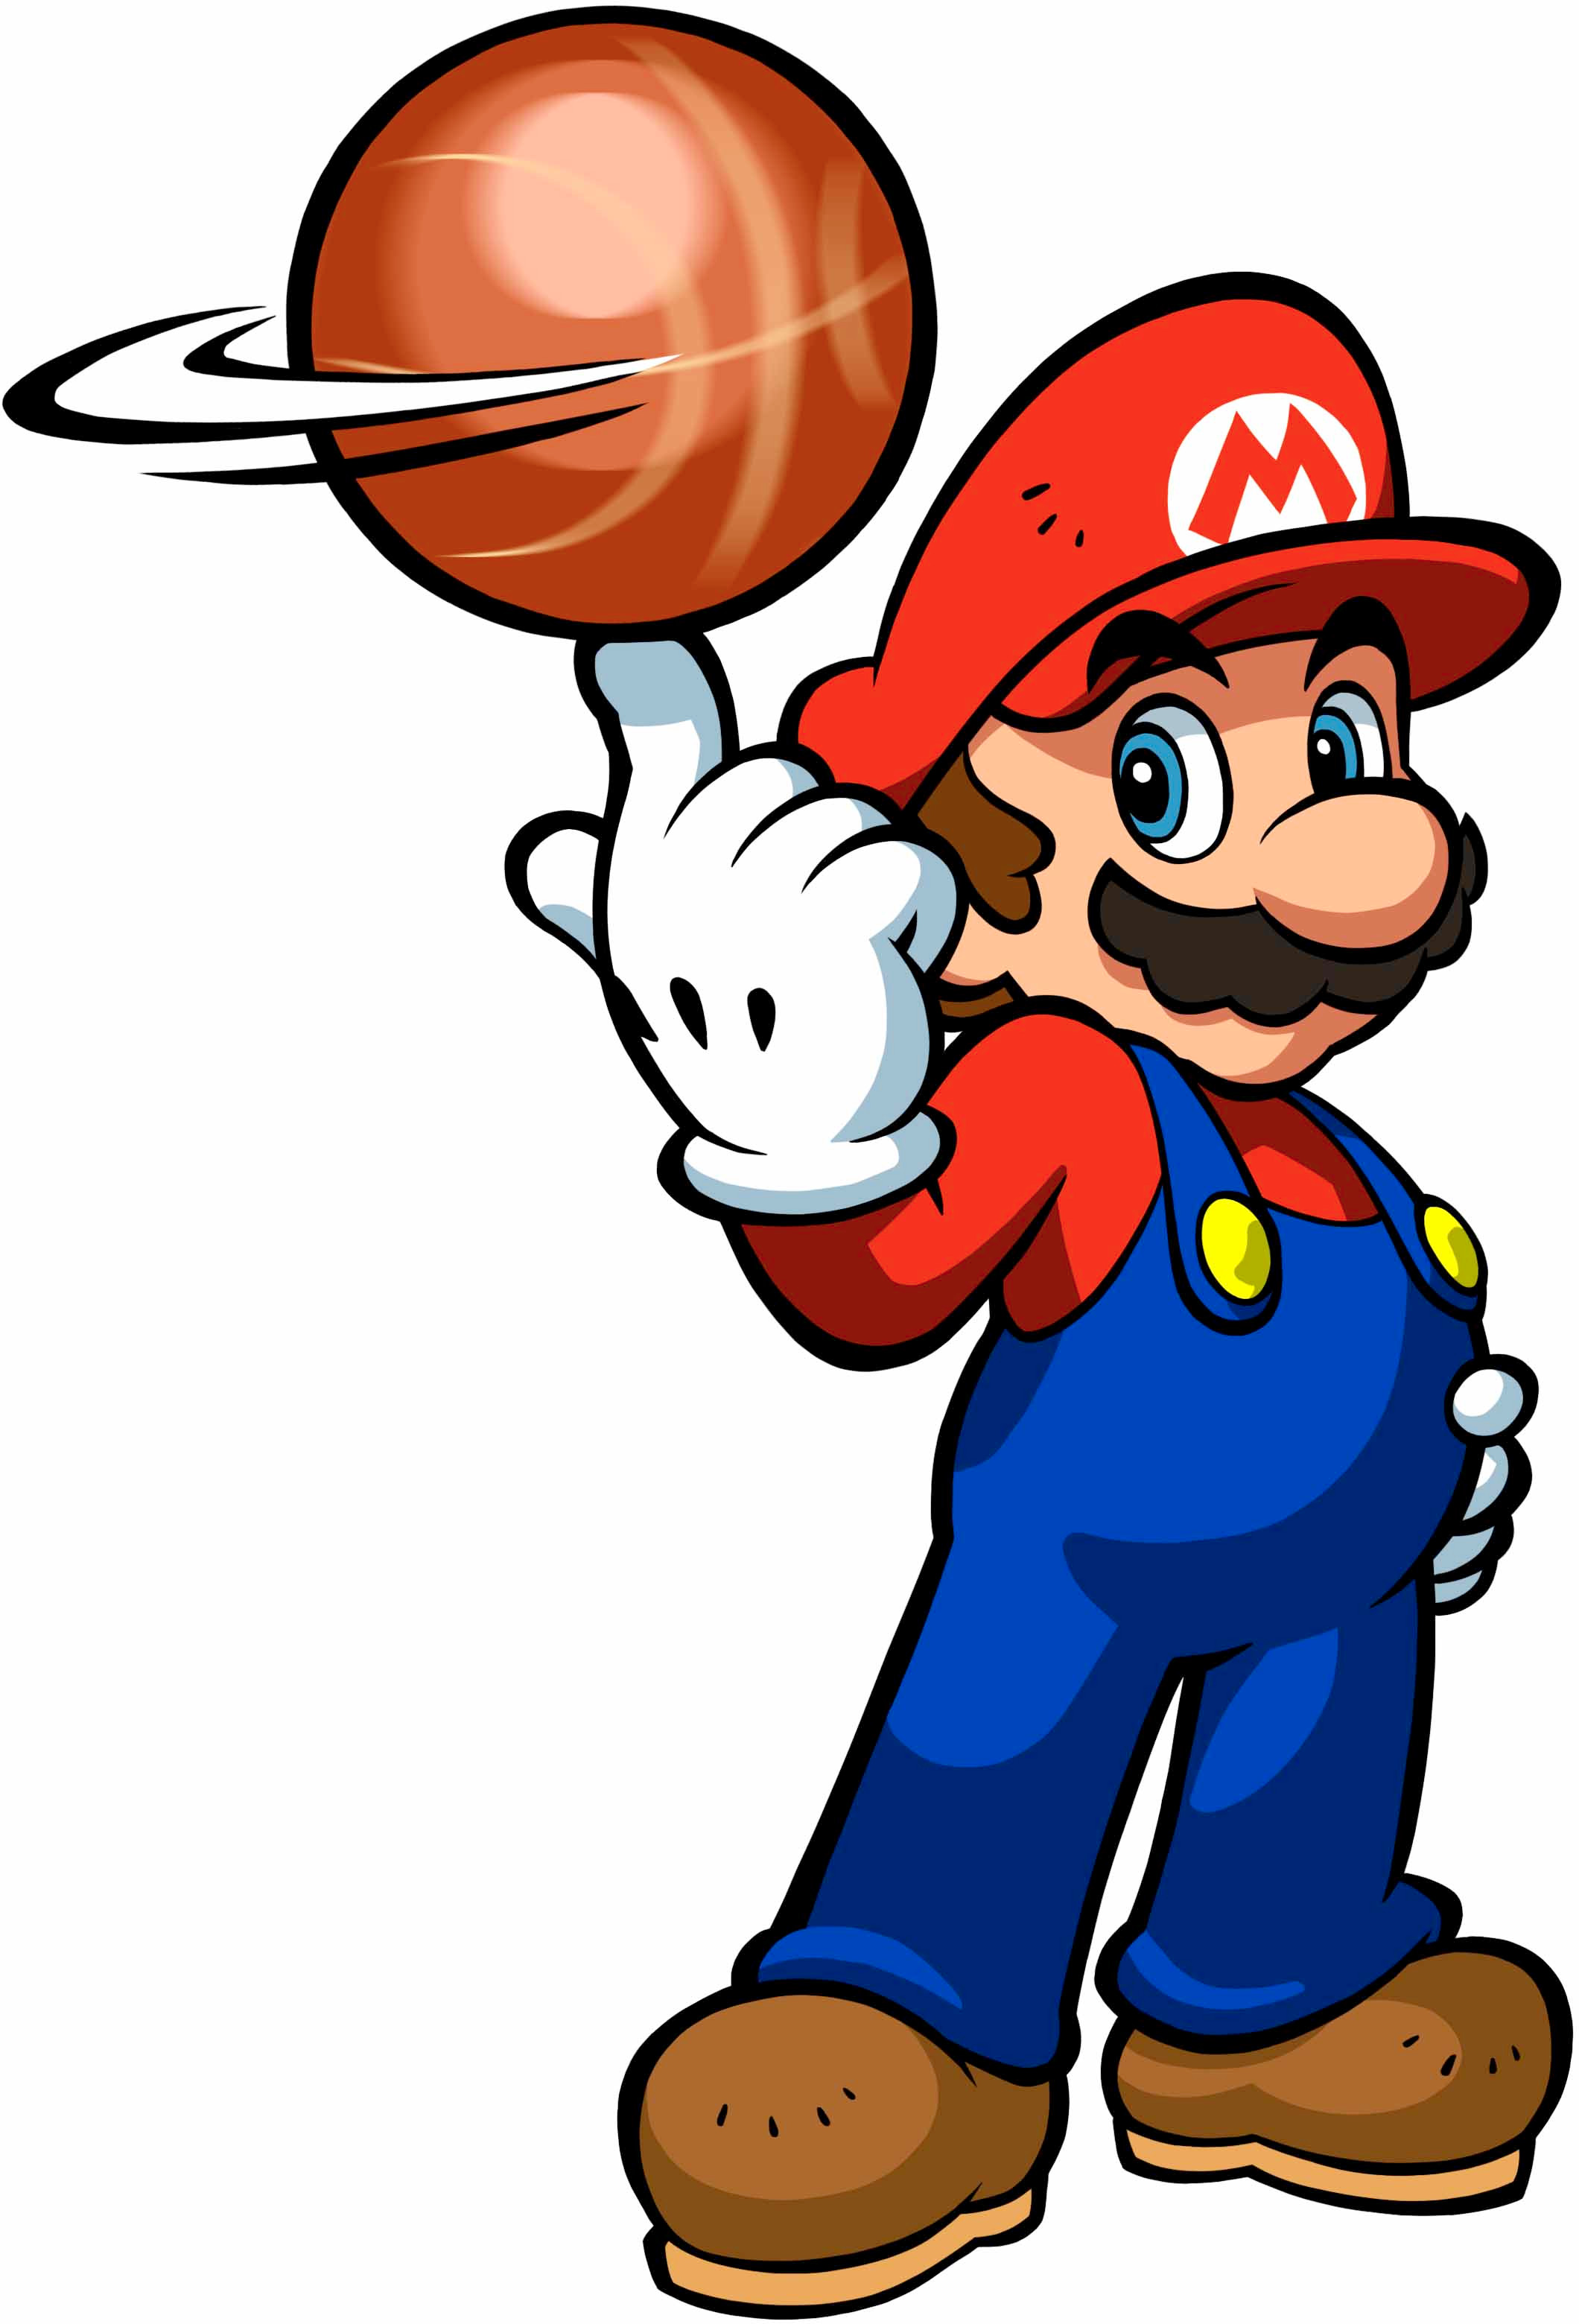 MH3on3_Mario.jpg